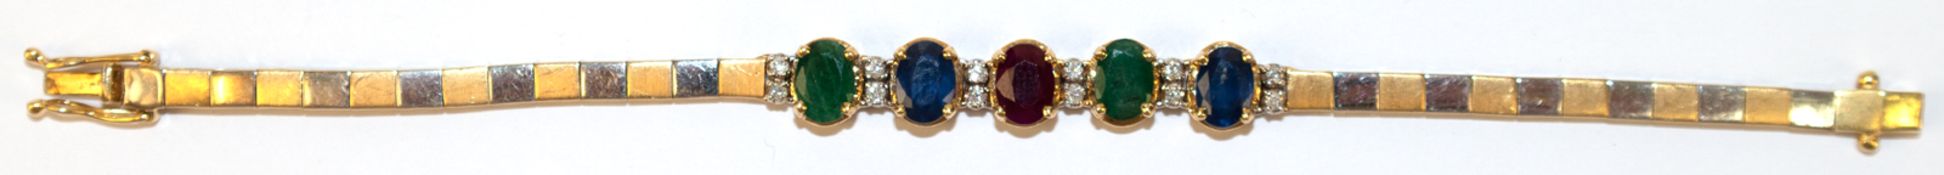 Bicolor-Armband, 750er GG/WG, Schauseite besetzt mit 2 Smaragden, 2 Saphiren, 1 Rubin und Brillante